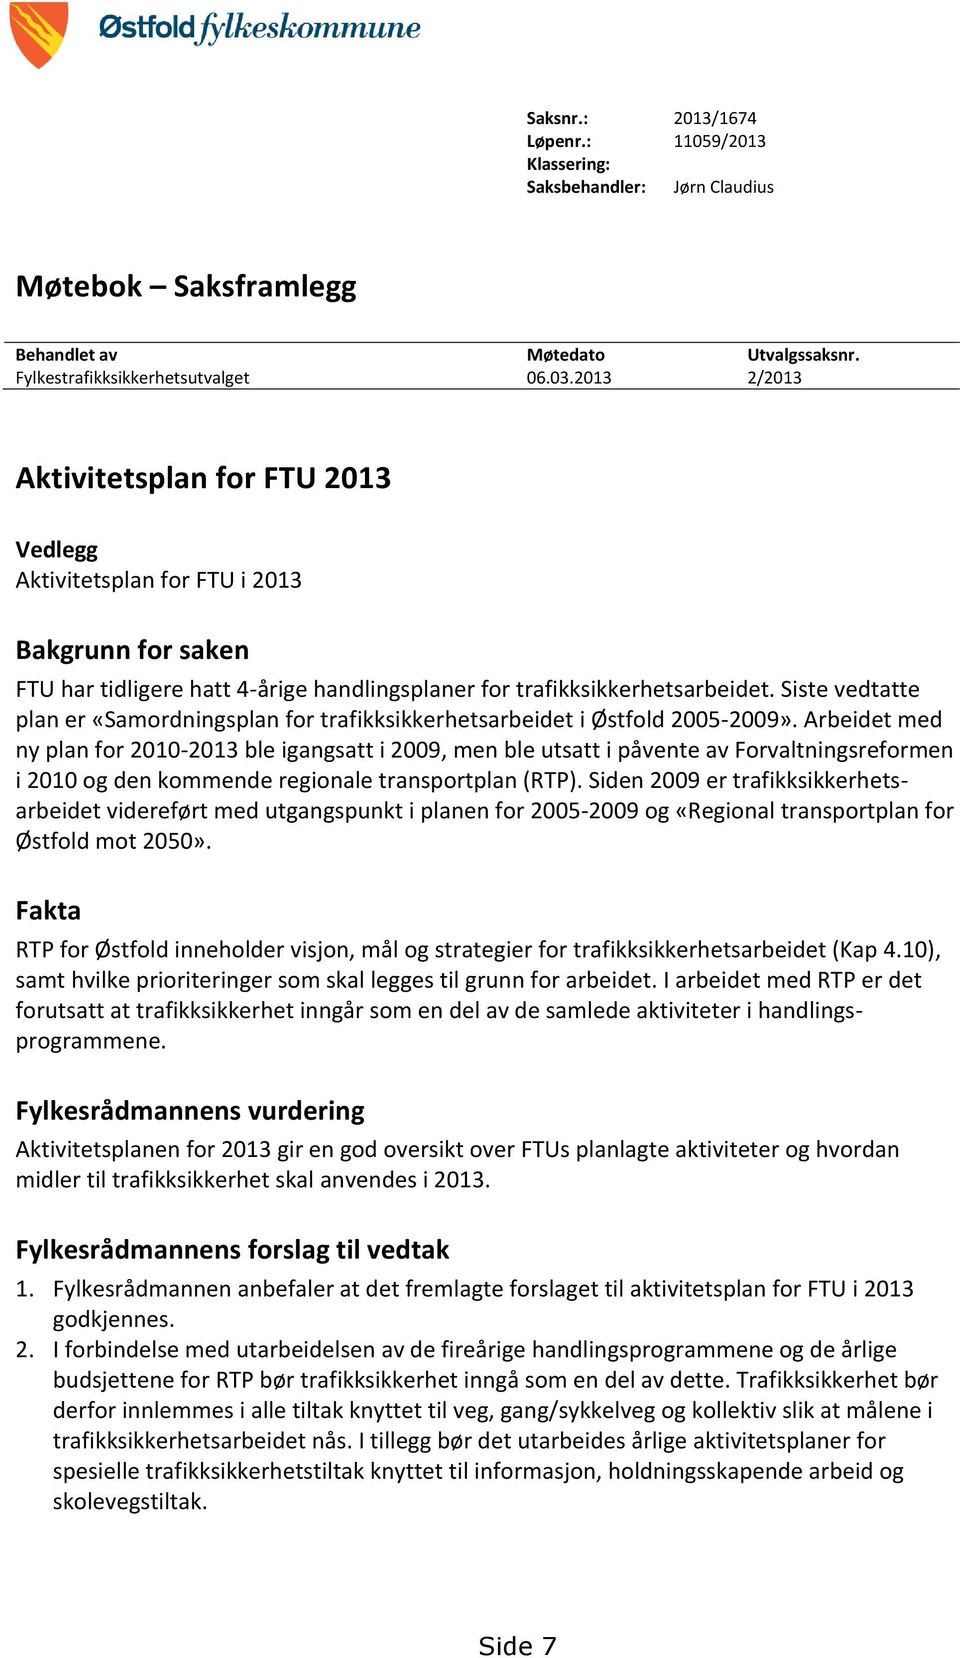 Siste vedtatte plan er «Samordningsplan for trafikksikkerhetsarbeidet i Østfold 2005-2009».